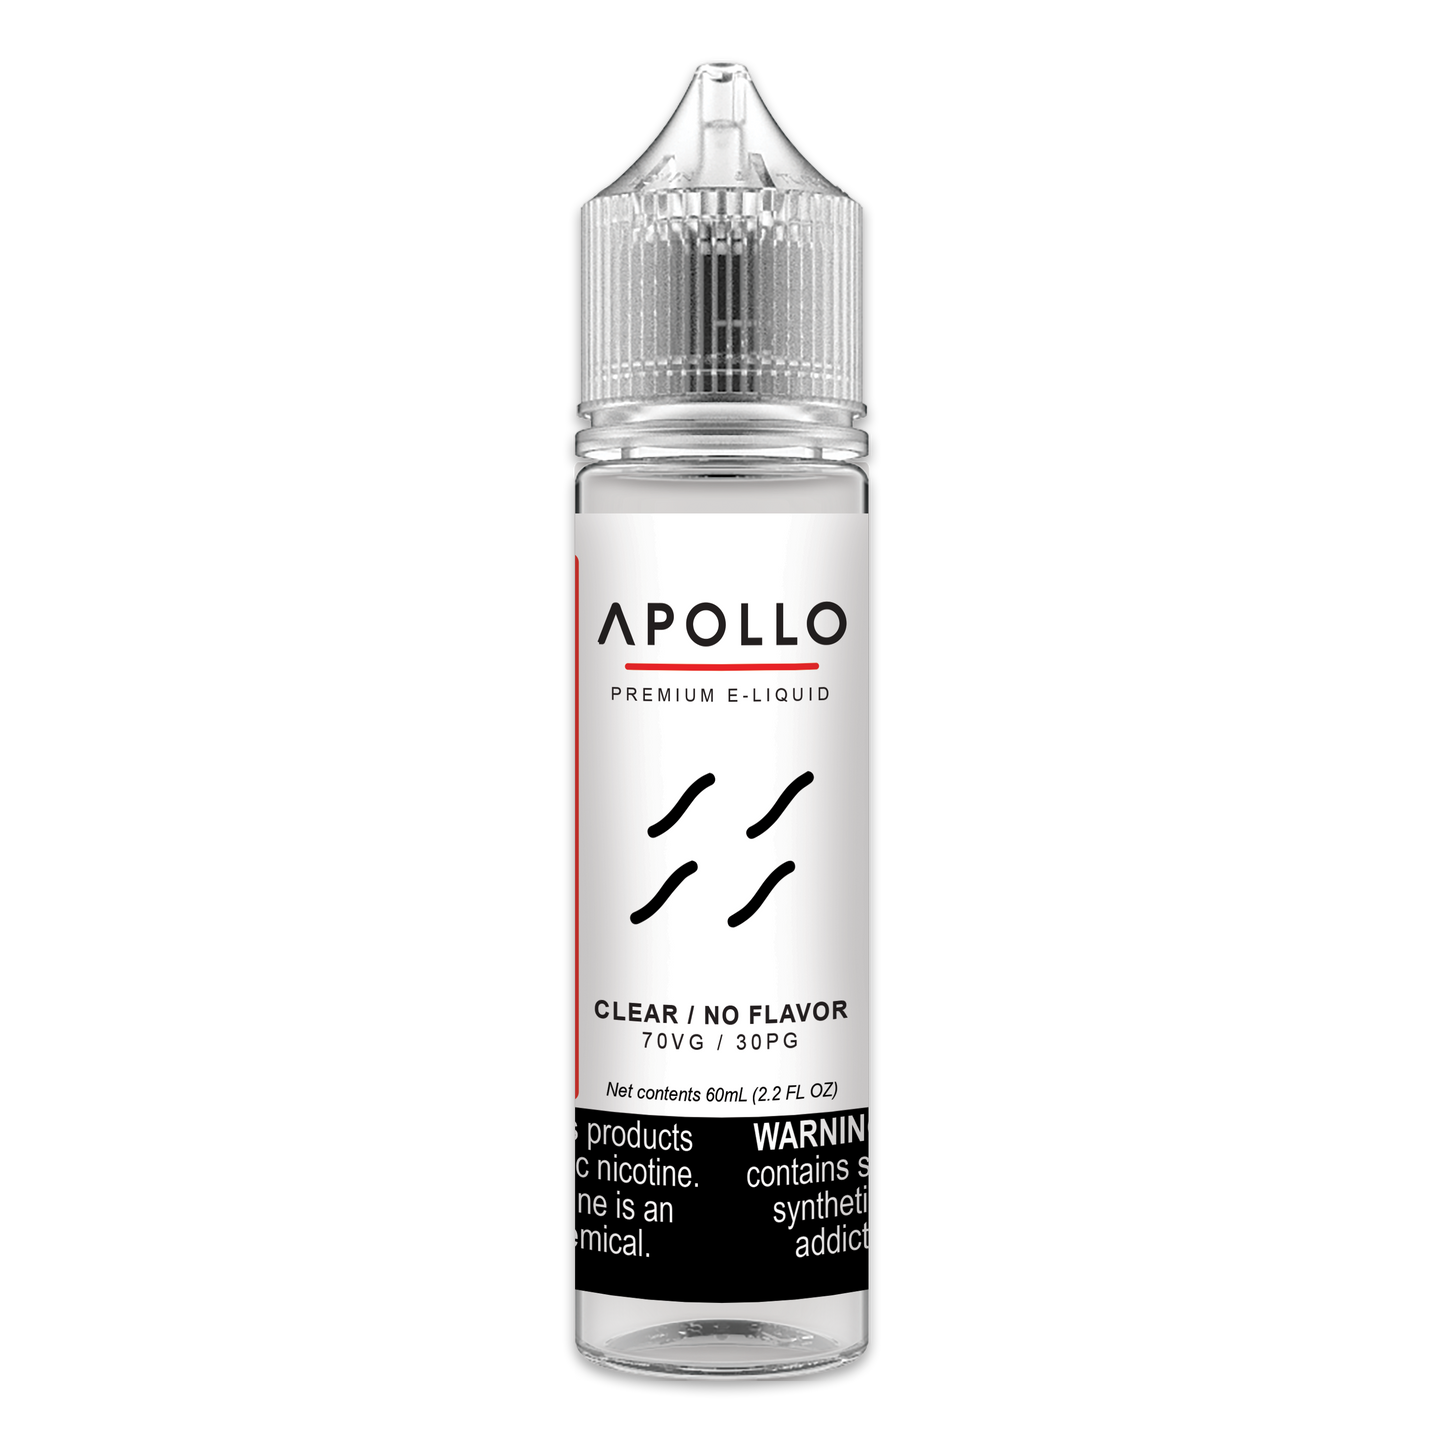 Apollo Clear (No Flavor) Max VG 60mL E-Liquid